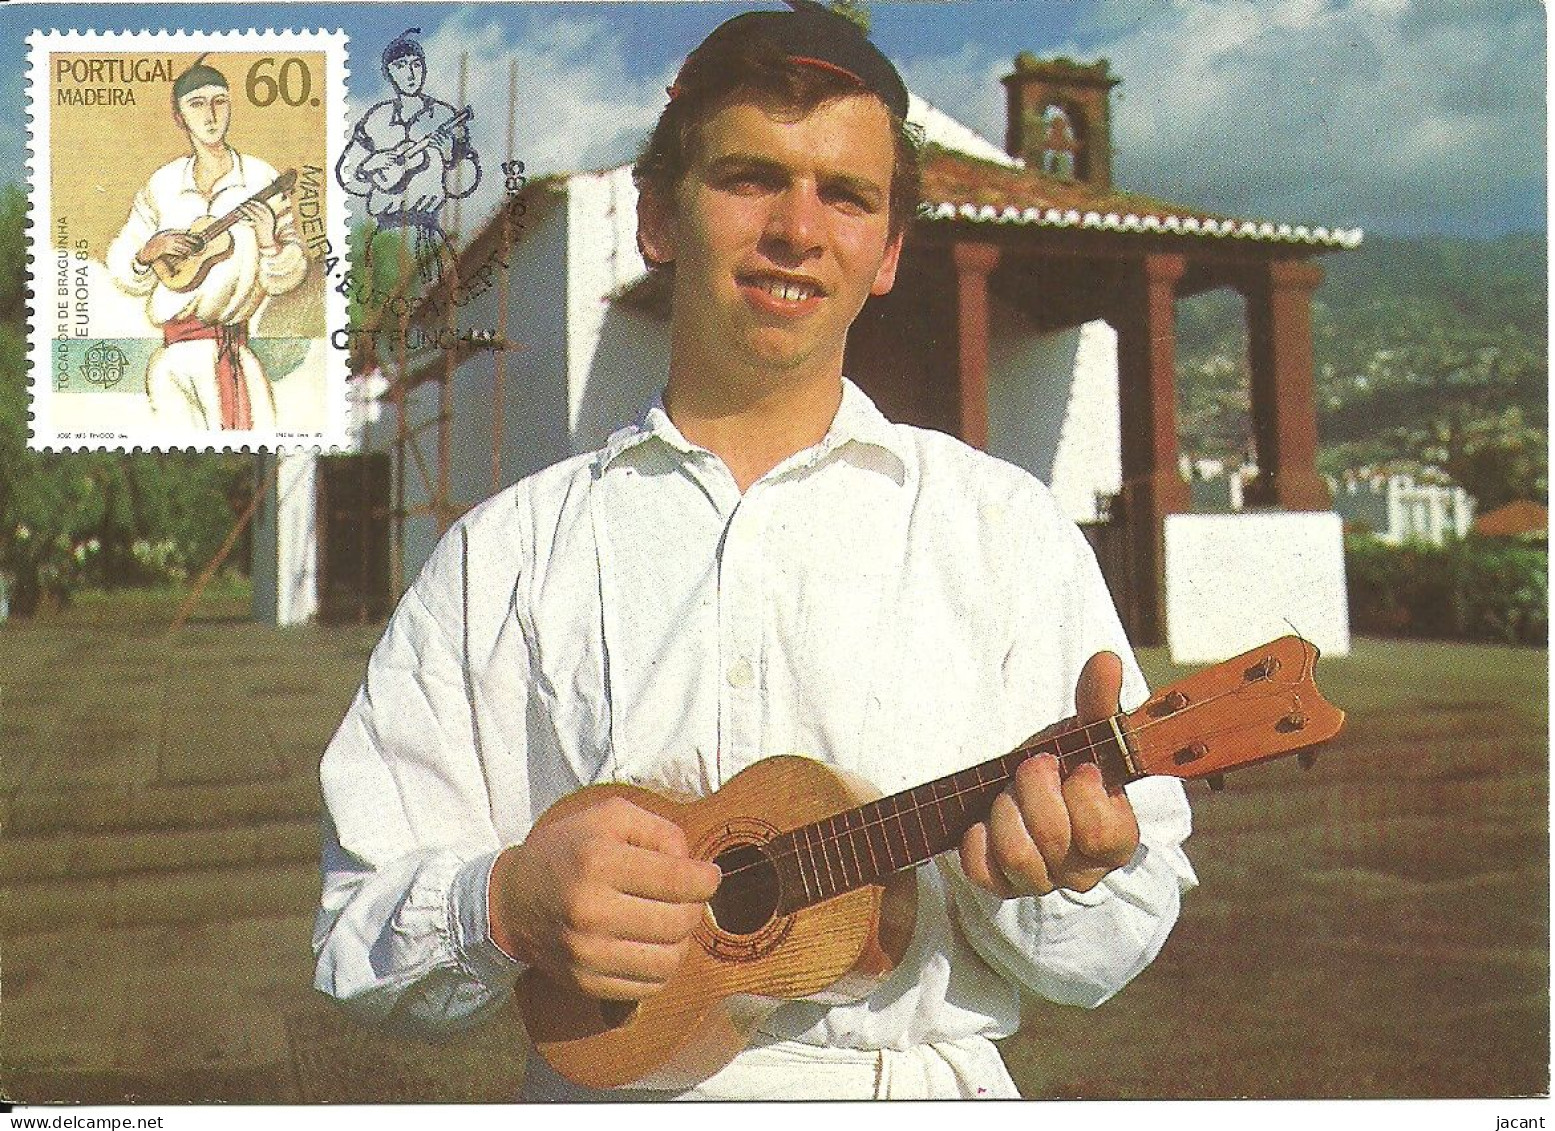 30842 - Carte Maximum - Portugal - Madeira Europa Tocadora De Braguinha - Instrument Musique Guitare Folk Musical Guitar - Maximum Cards & Covers